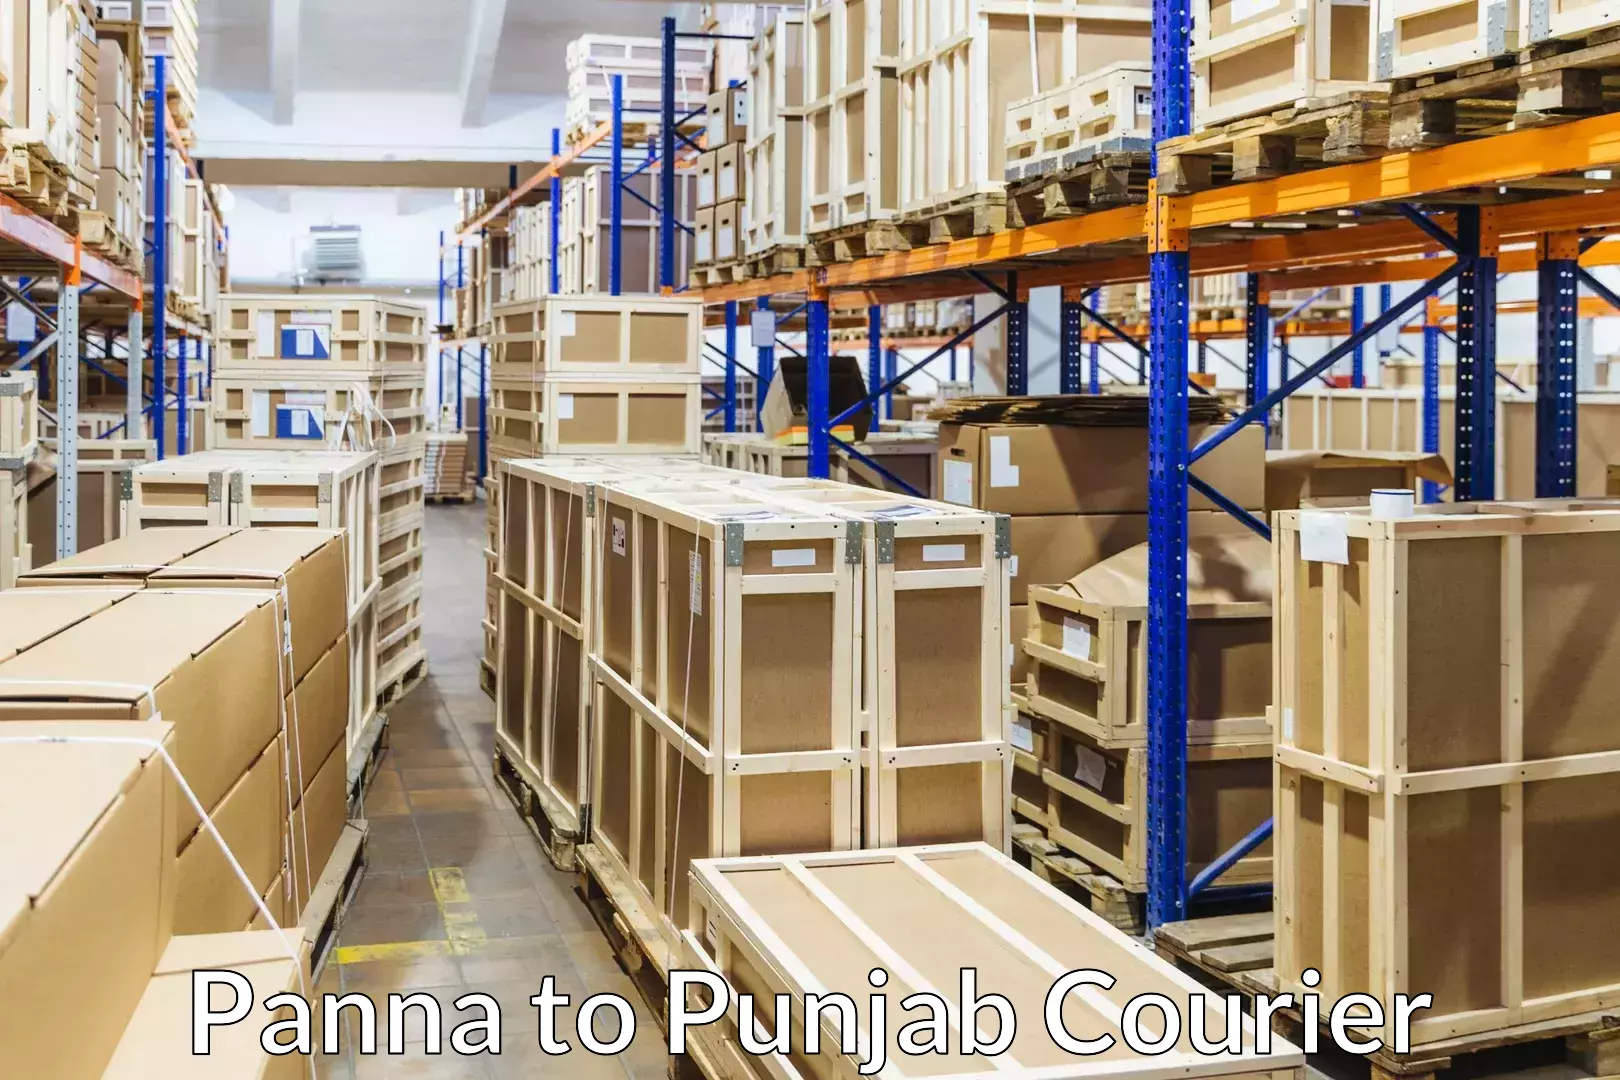 Furniture moving service Panna to Punjab